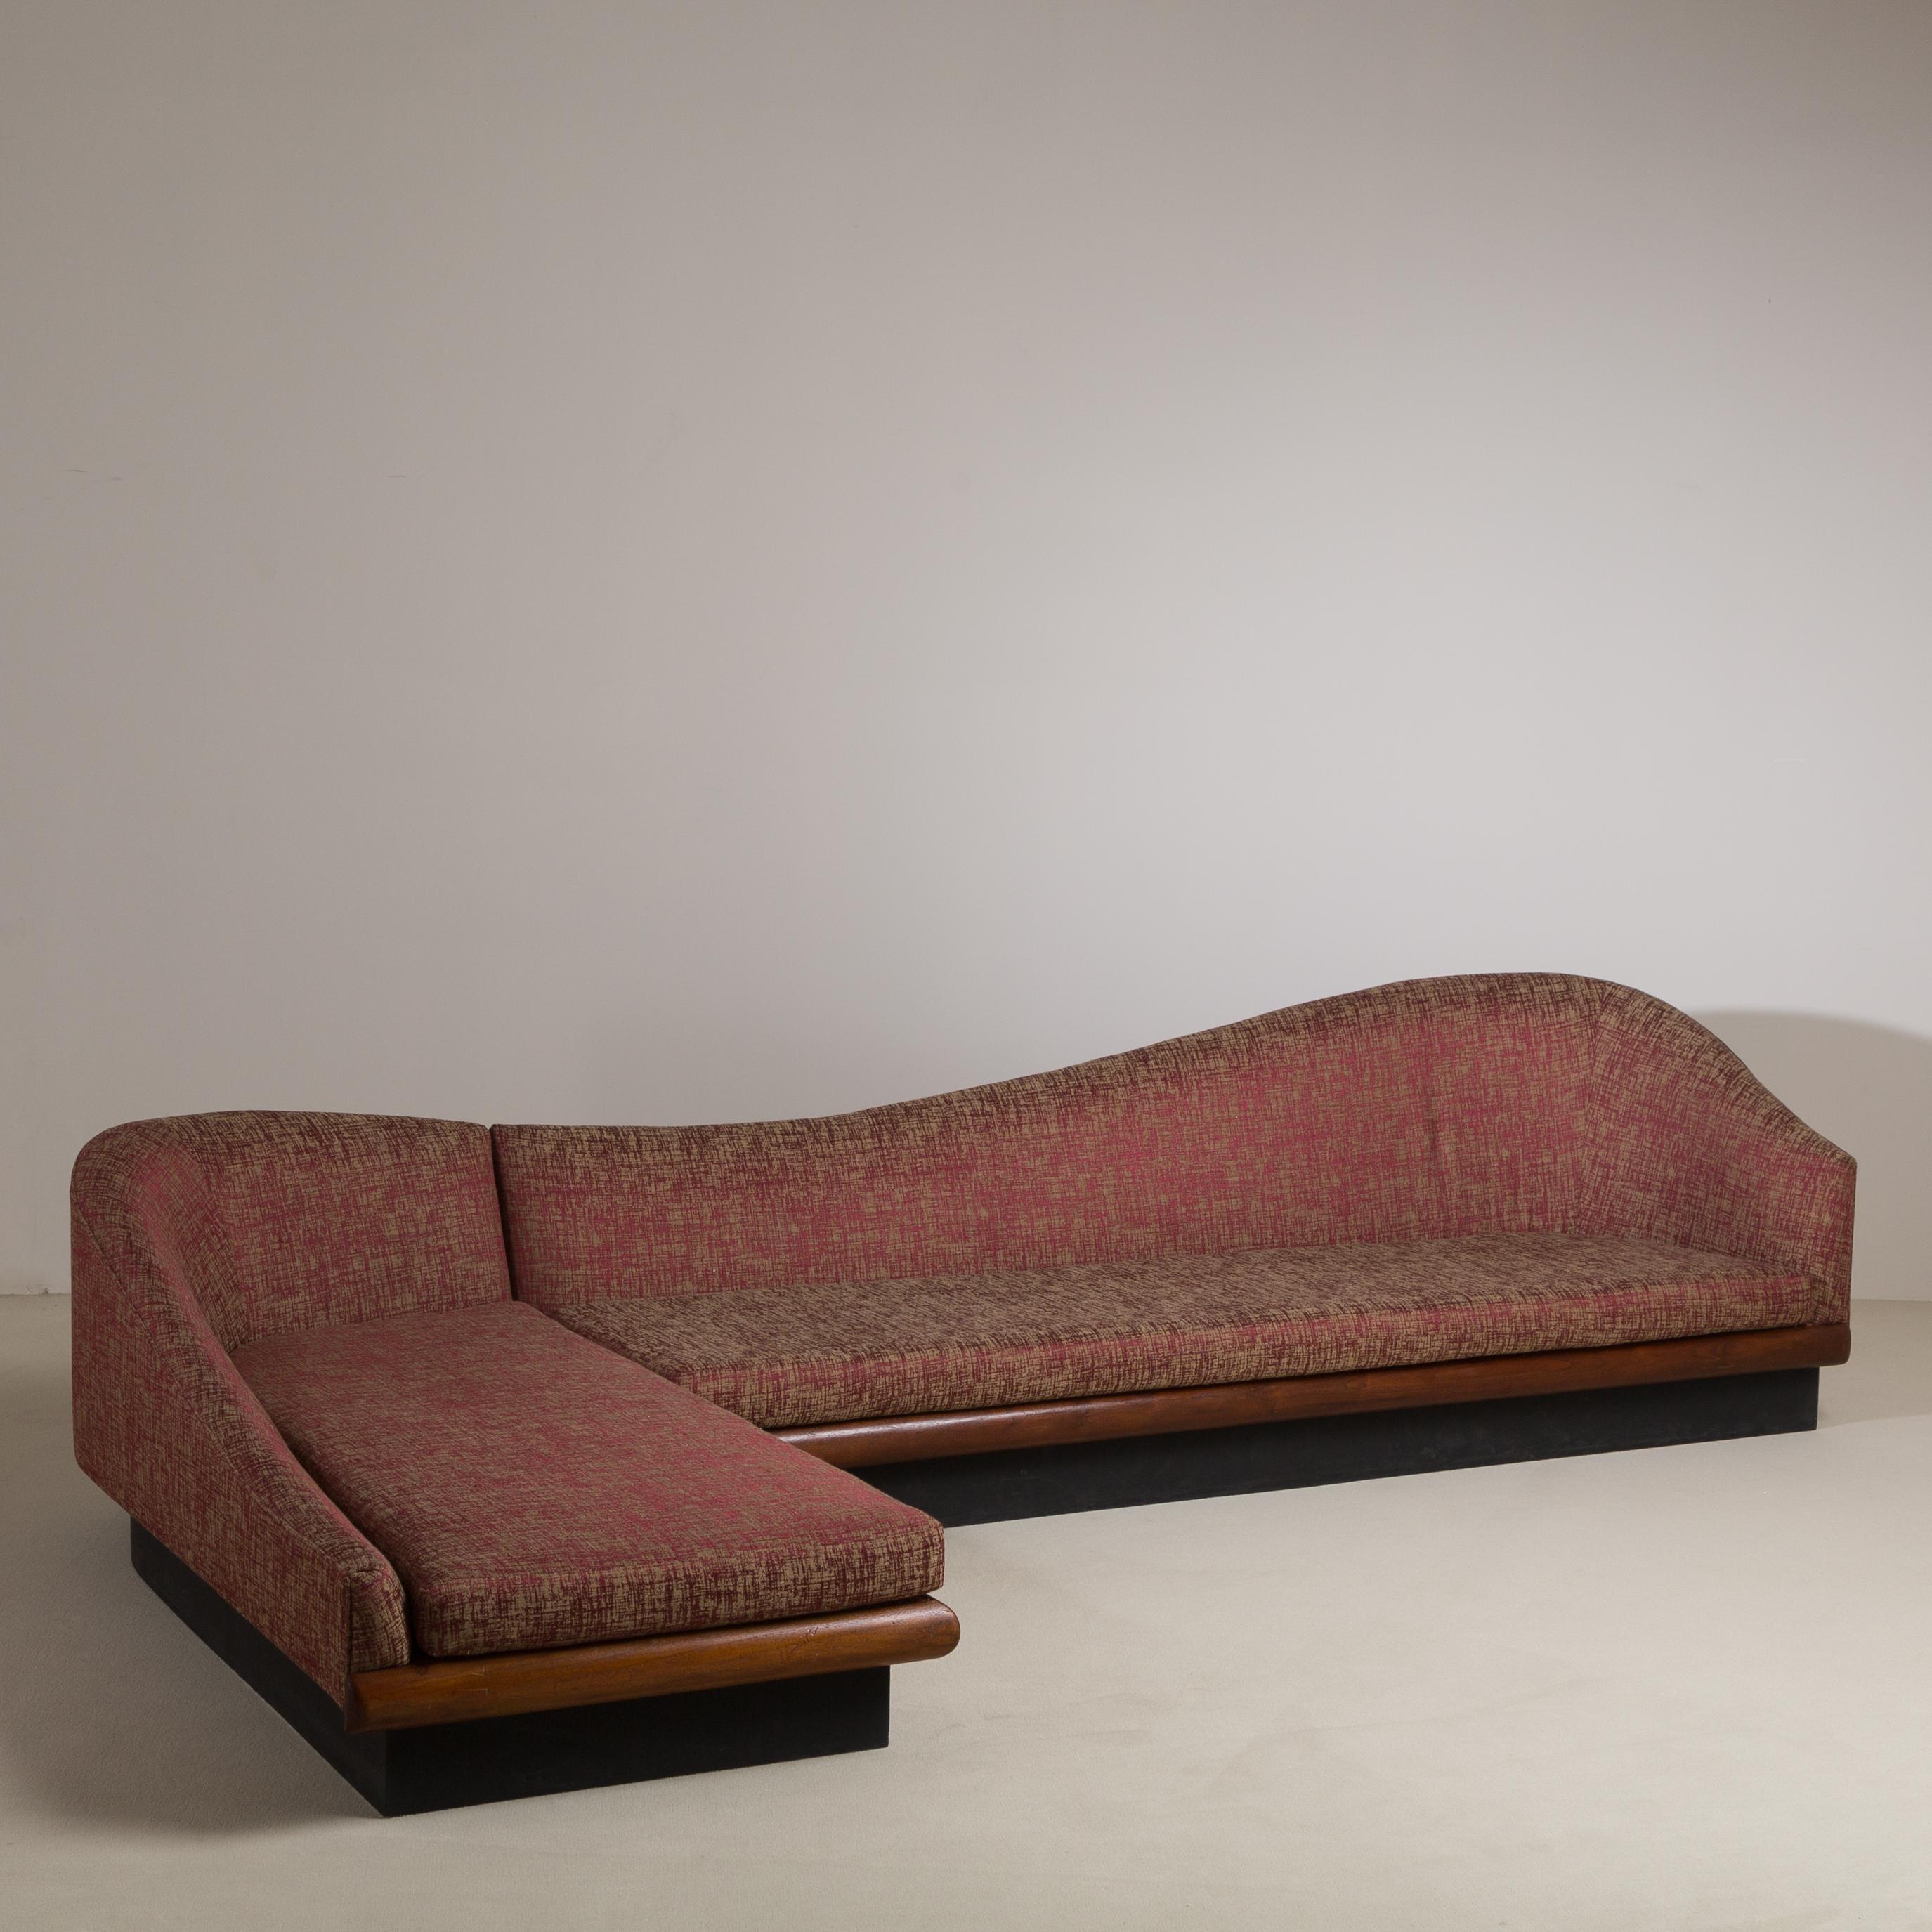 Gebogenes zweiteiliges Wolken-Sofa von Adrian Pearsall für Craft Associates, USA, 1950er Jahre (Moderne der Mitte des Jahrhunderts)